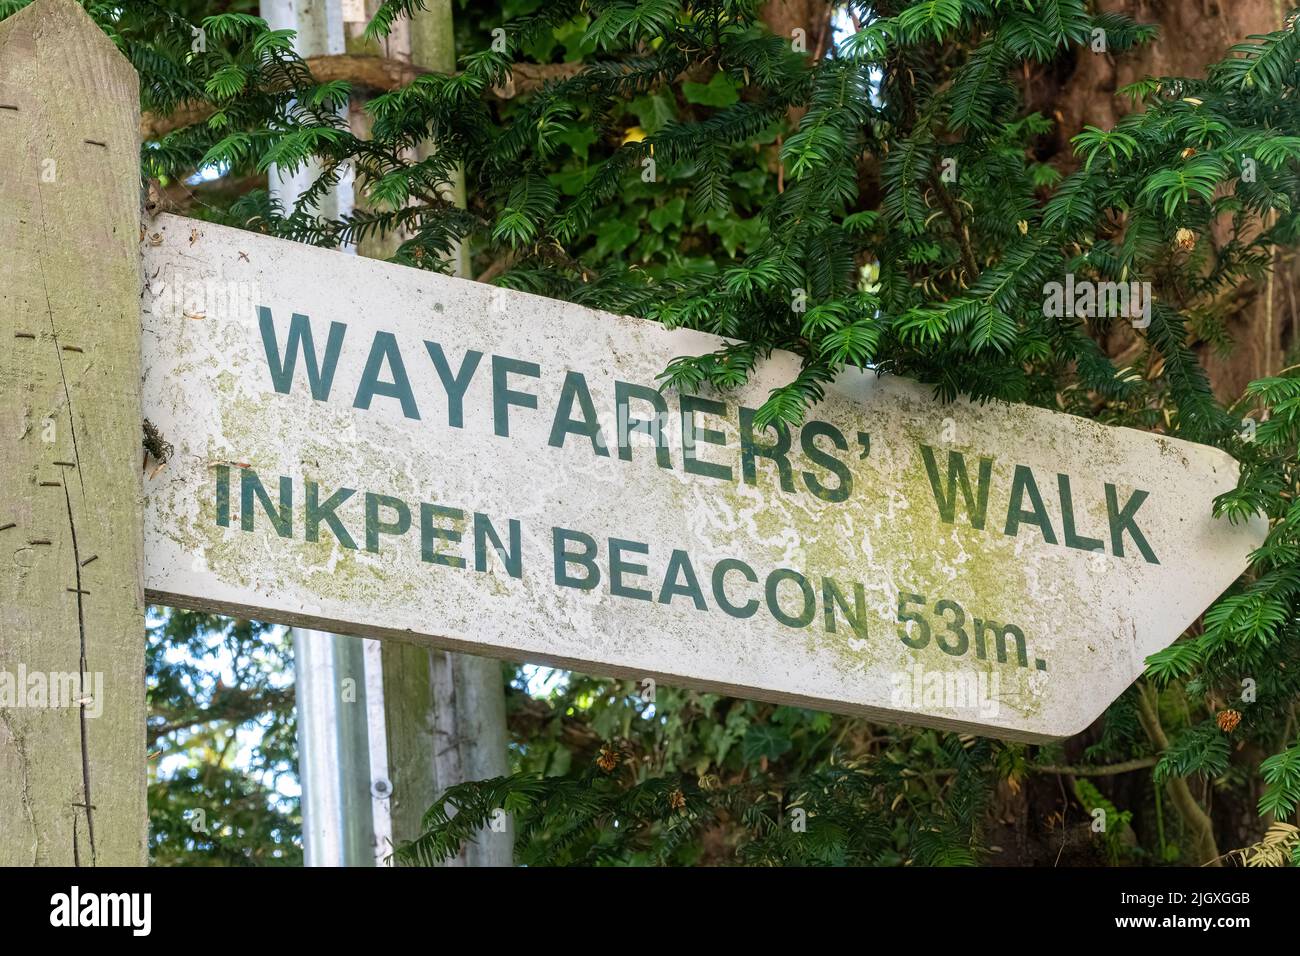 Wanderers Walk-Schild in Hampshire, 53 Meilen nach Inkpen Beacon, Großbritannien. Der Wayfarer's Walk ist ein 71 Meilen langer Fußweg in Südengland Stockfoto